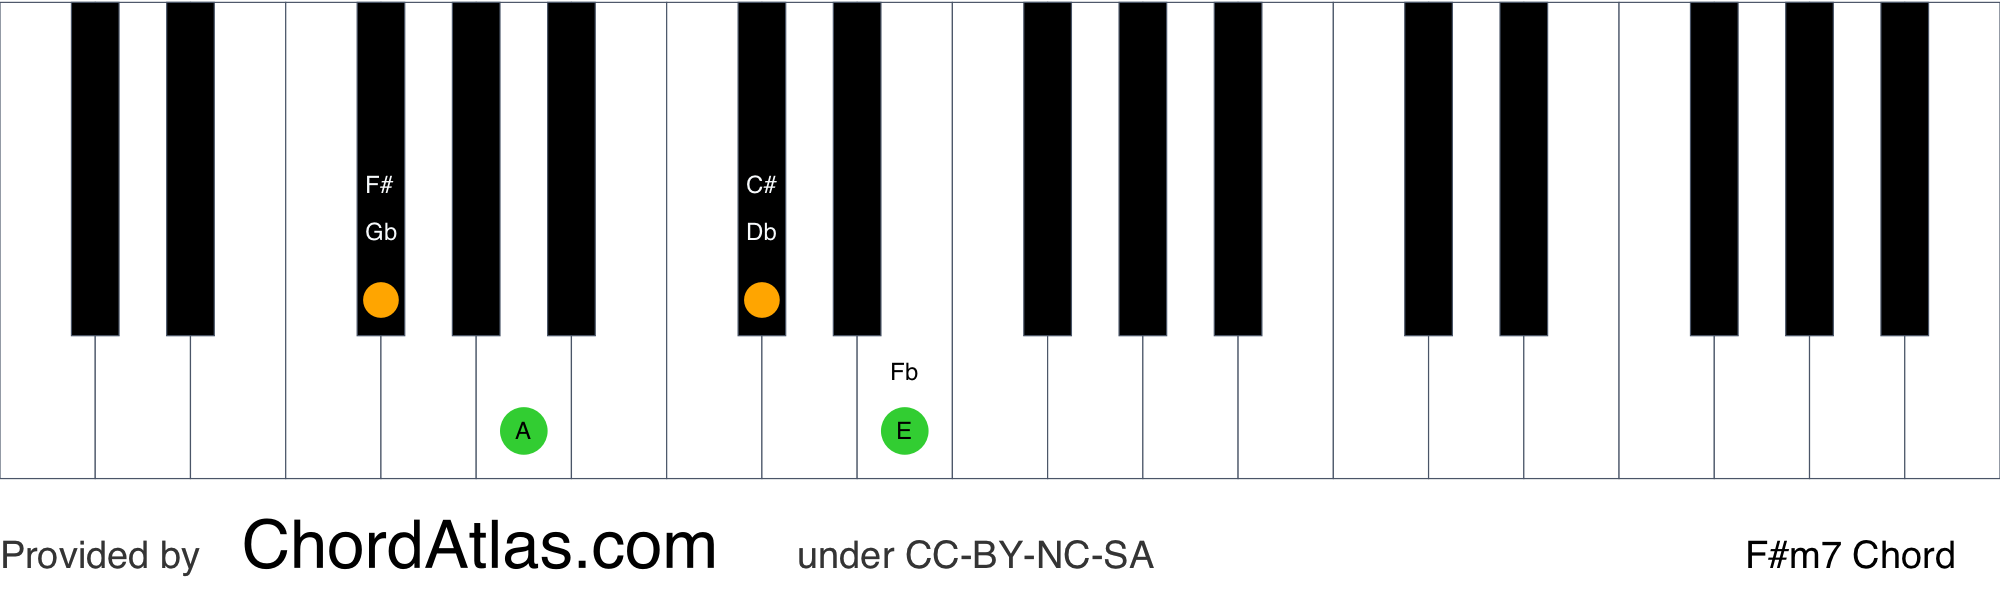 a minor 7 chord piano